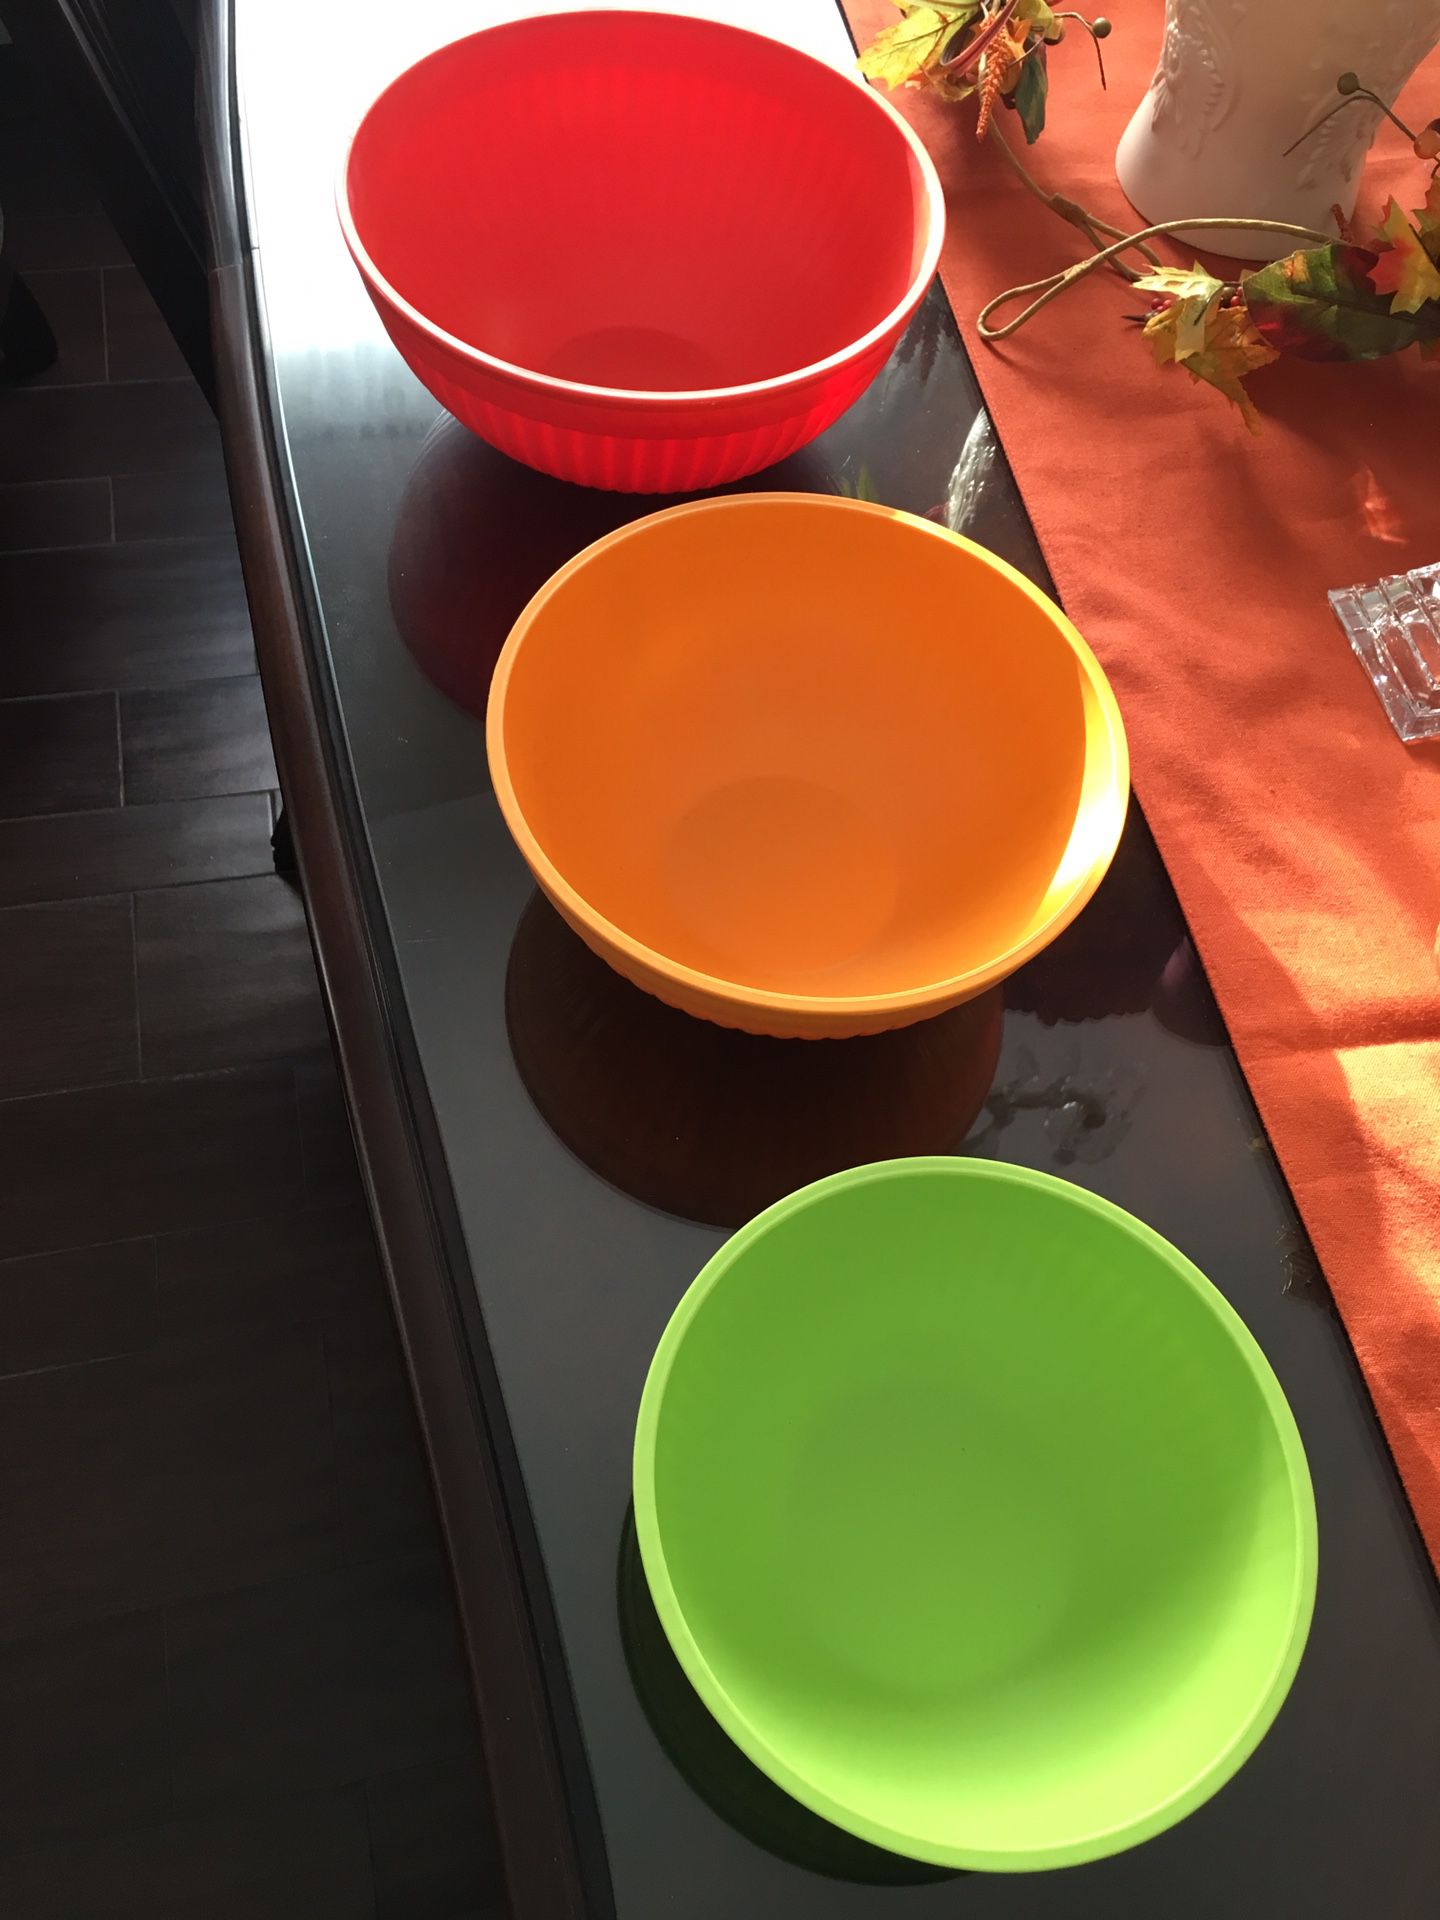 3 plastic Nordic mixing bowls